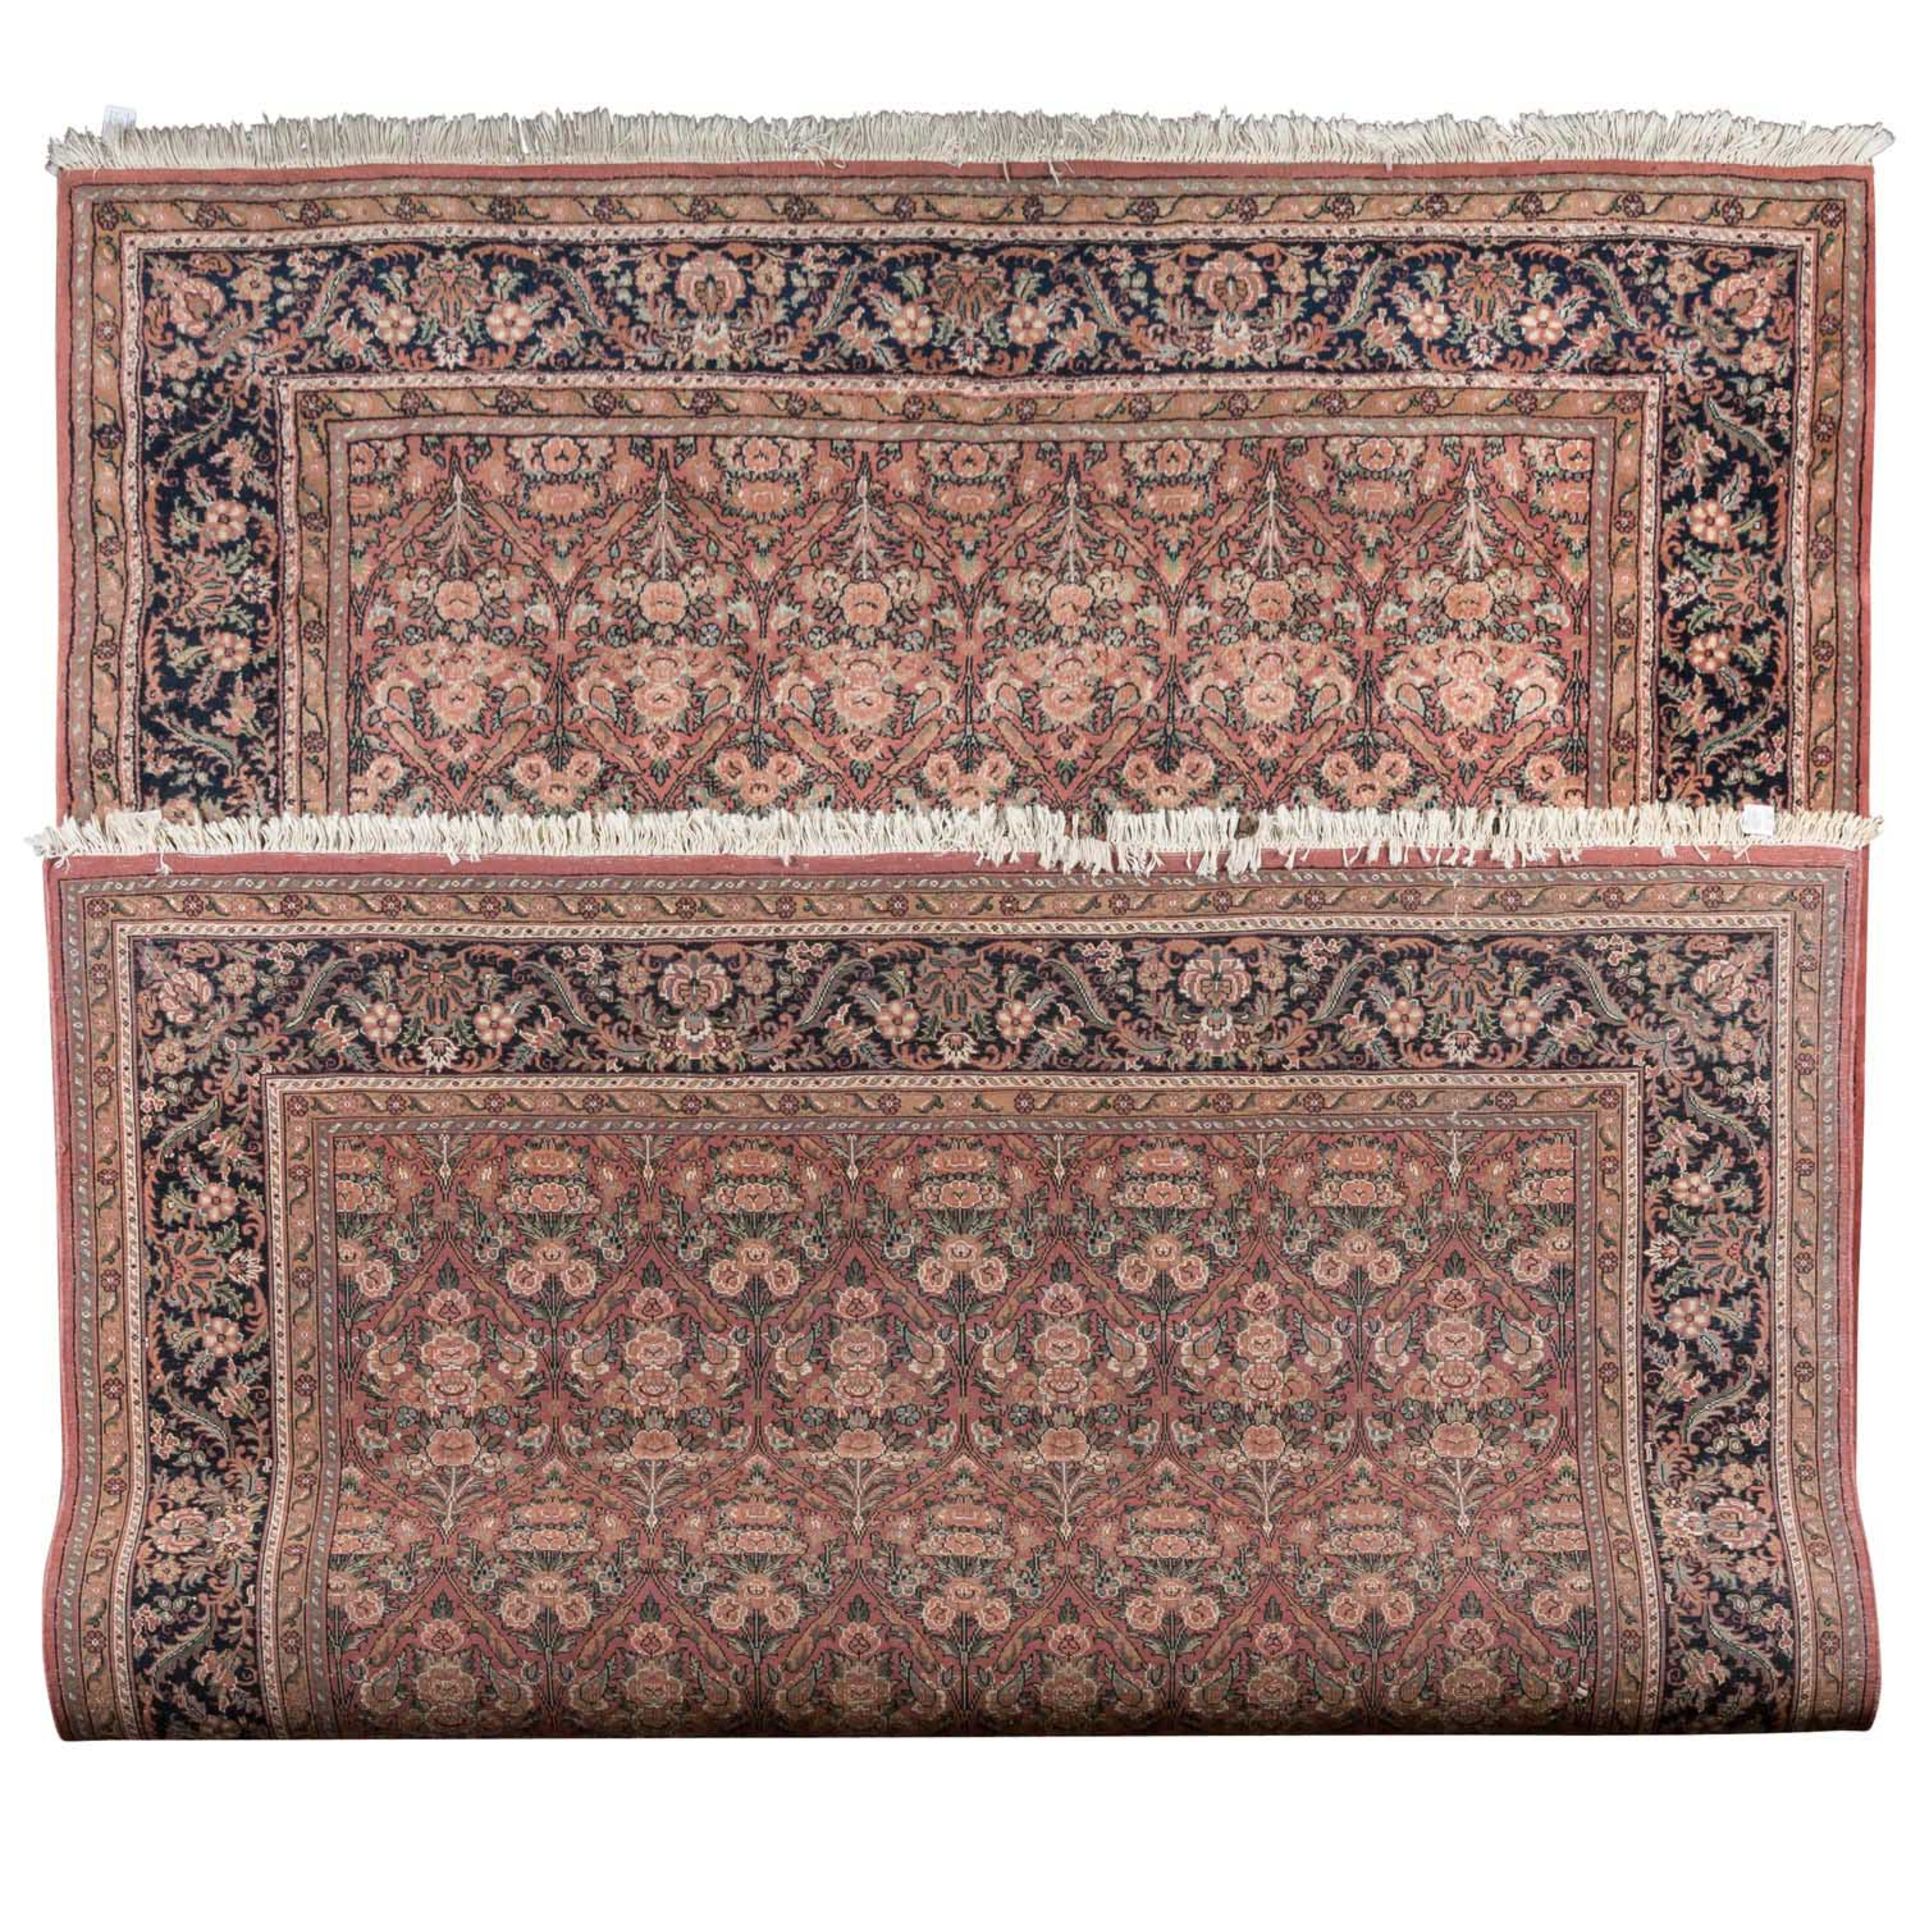 Orientteppich. 'ROSENBIDJAR'/INDIEN, 20. Jh., 245x350 cm. - Image 2 of 3